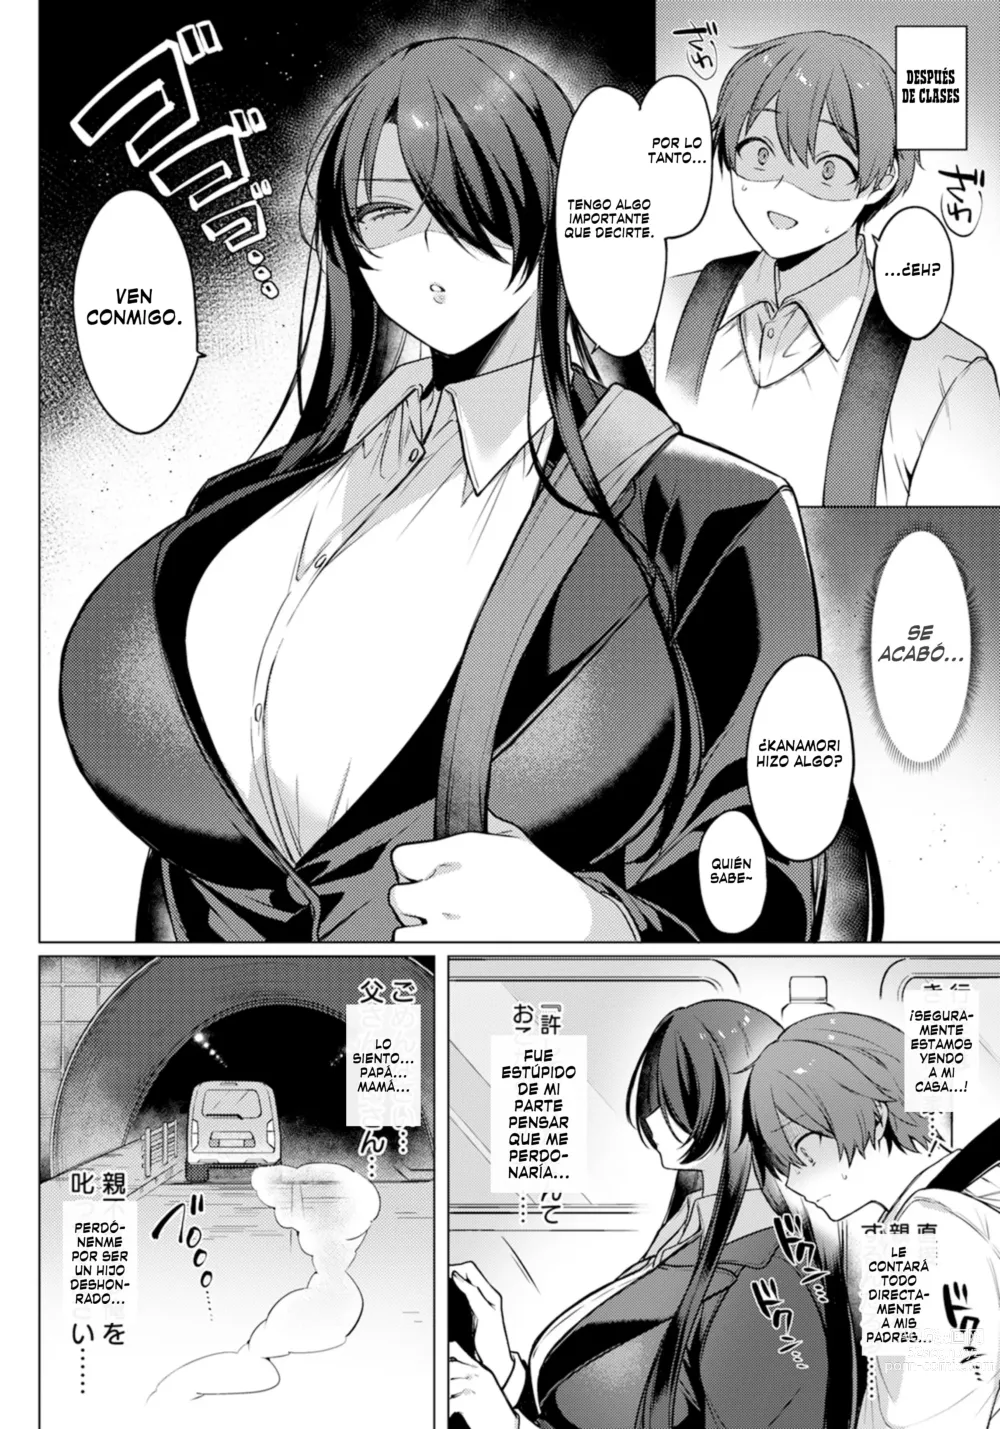 Page 7 of manga Cómo perder la compostura con frialdad